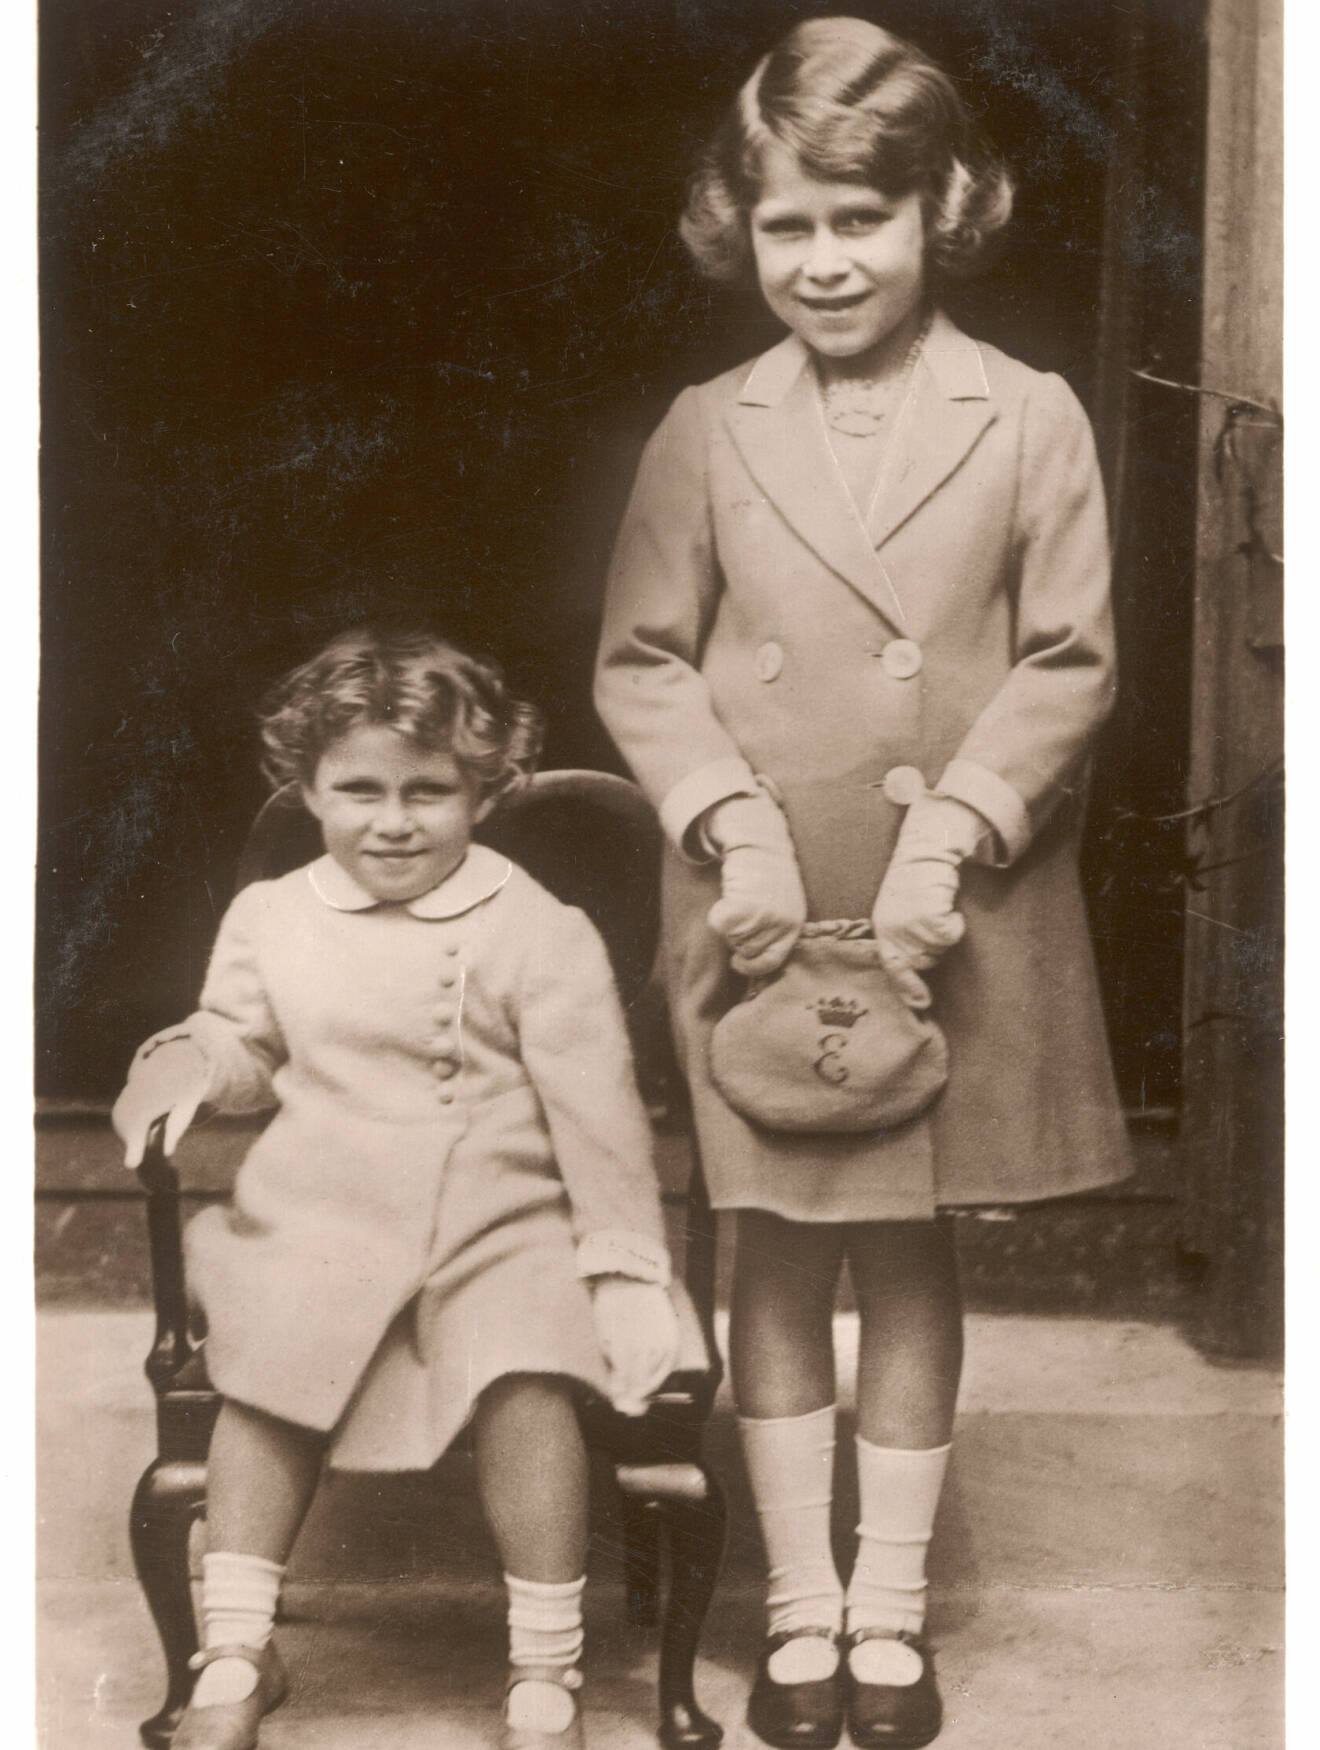 Drottning Elizabeth II som barn, tillsammans med sin syster prinsessan Margaret.